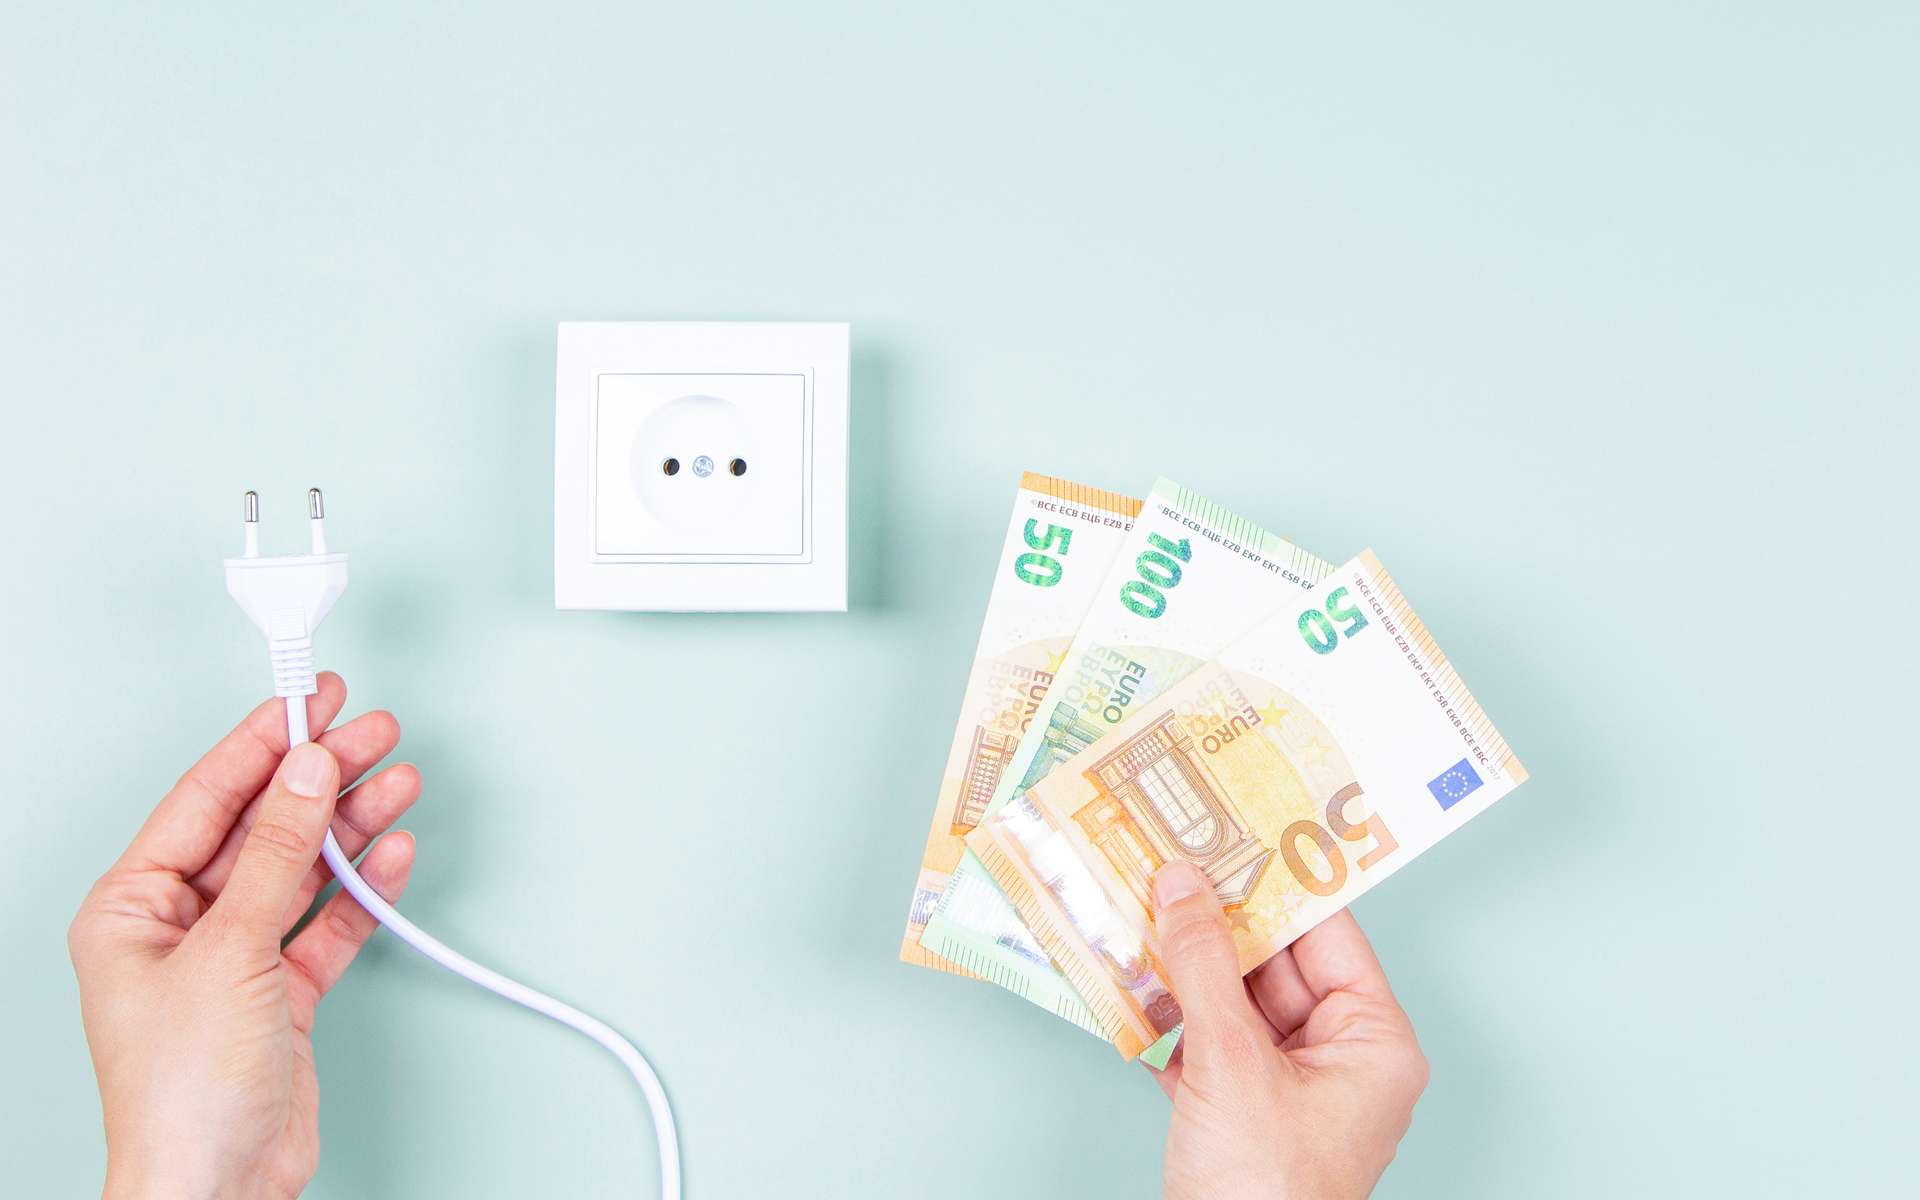 Utiliser un comparateur pour payer son électricité moins cher permet de faire des économies. © Vejaa, Adobe Stock